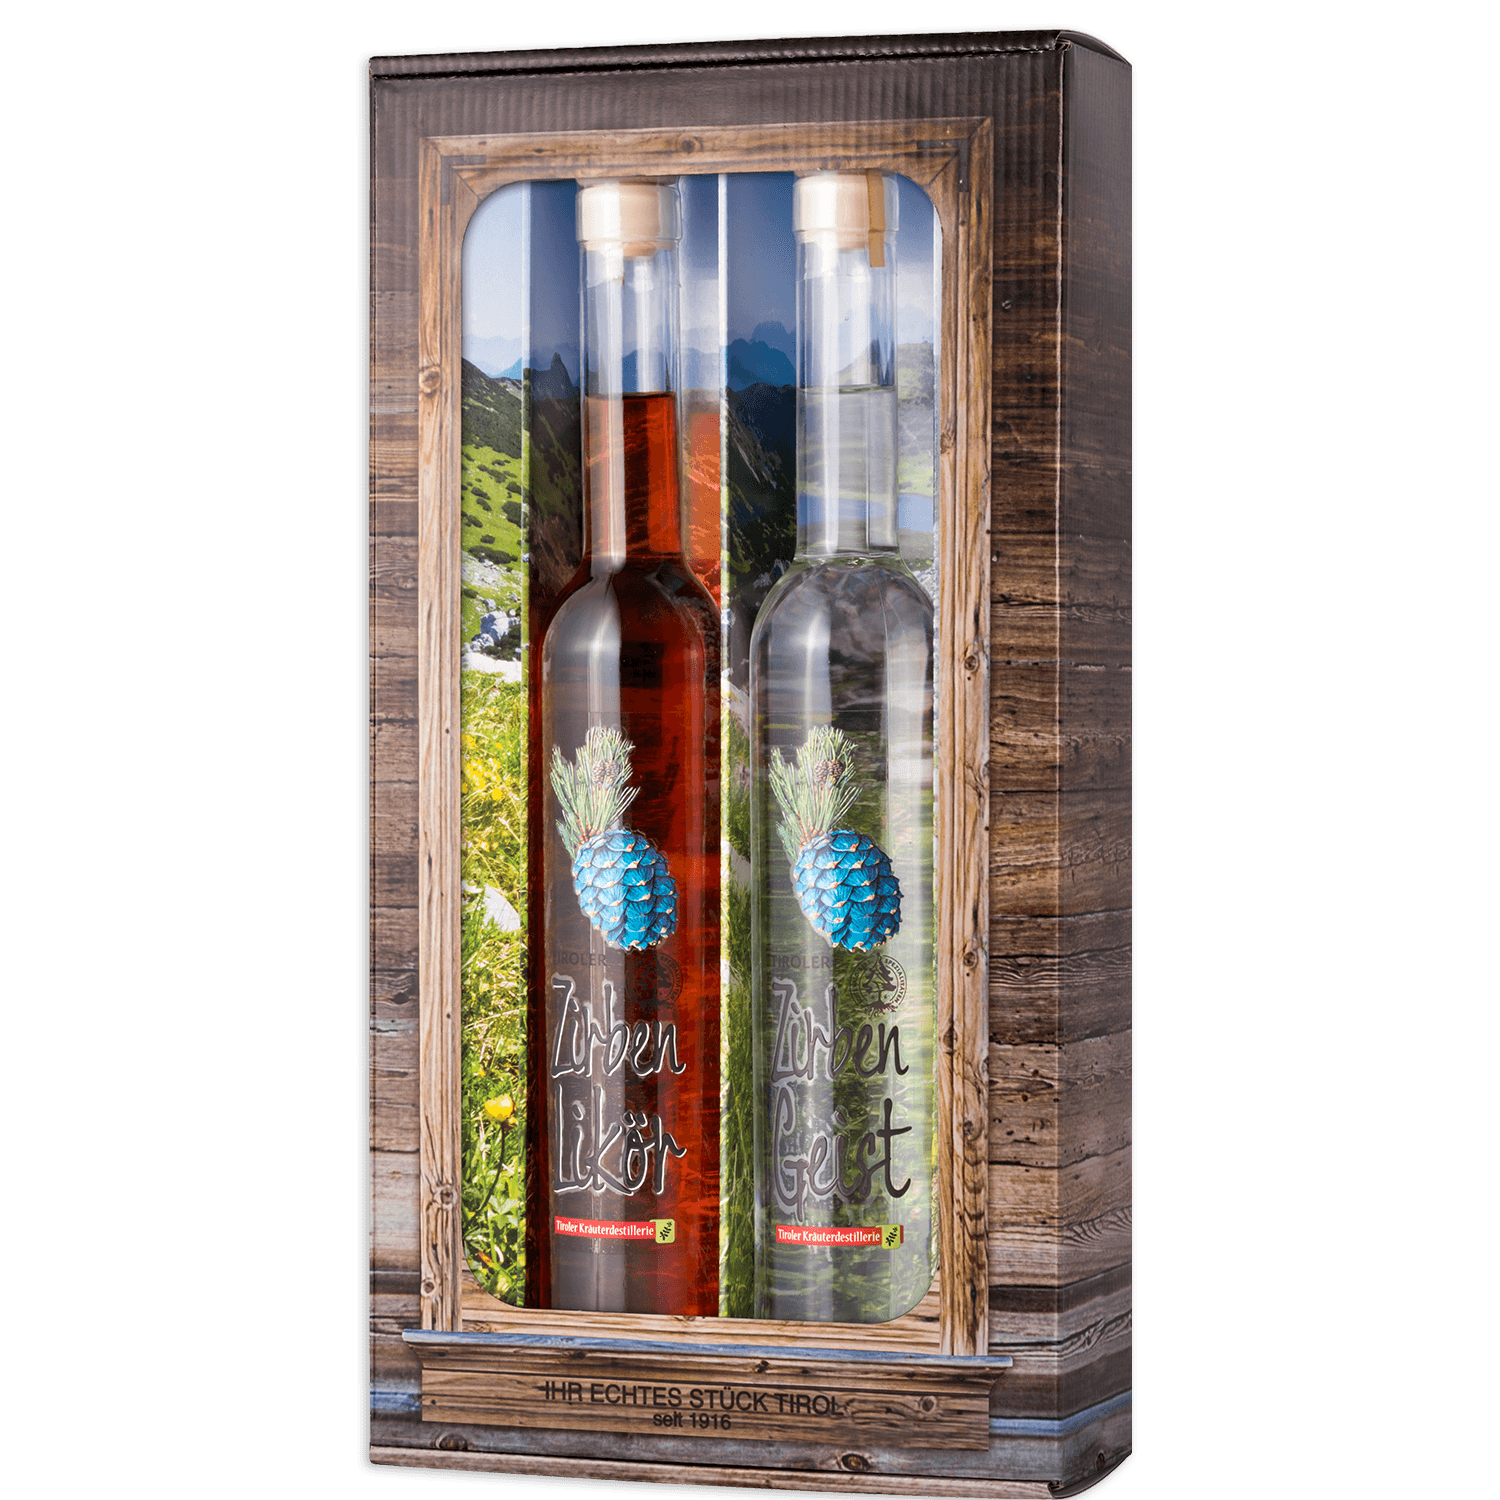 High-quality gift box with Swiss Stone Pine Spirits from the Tiroler Kräuterdestillerie